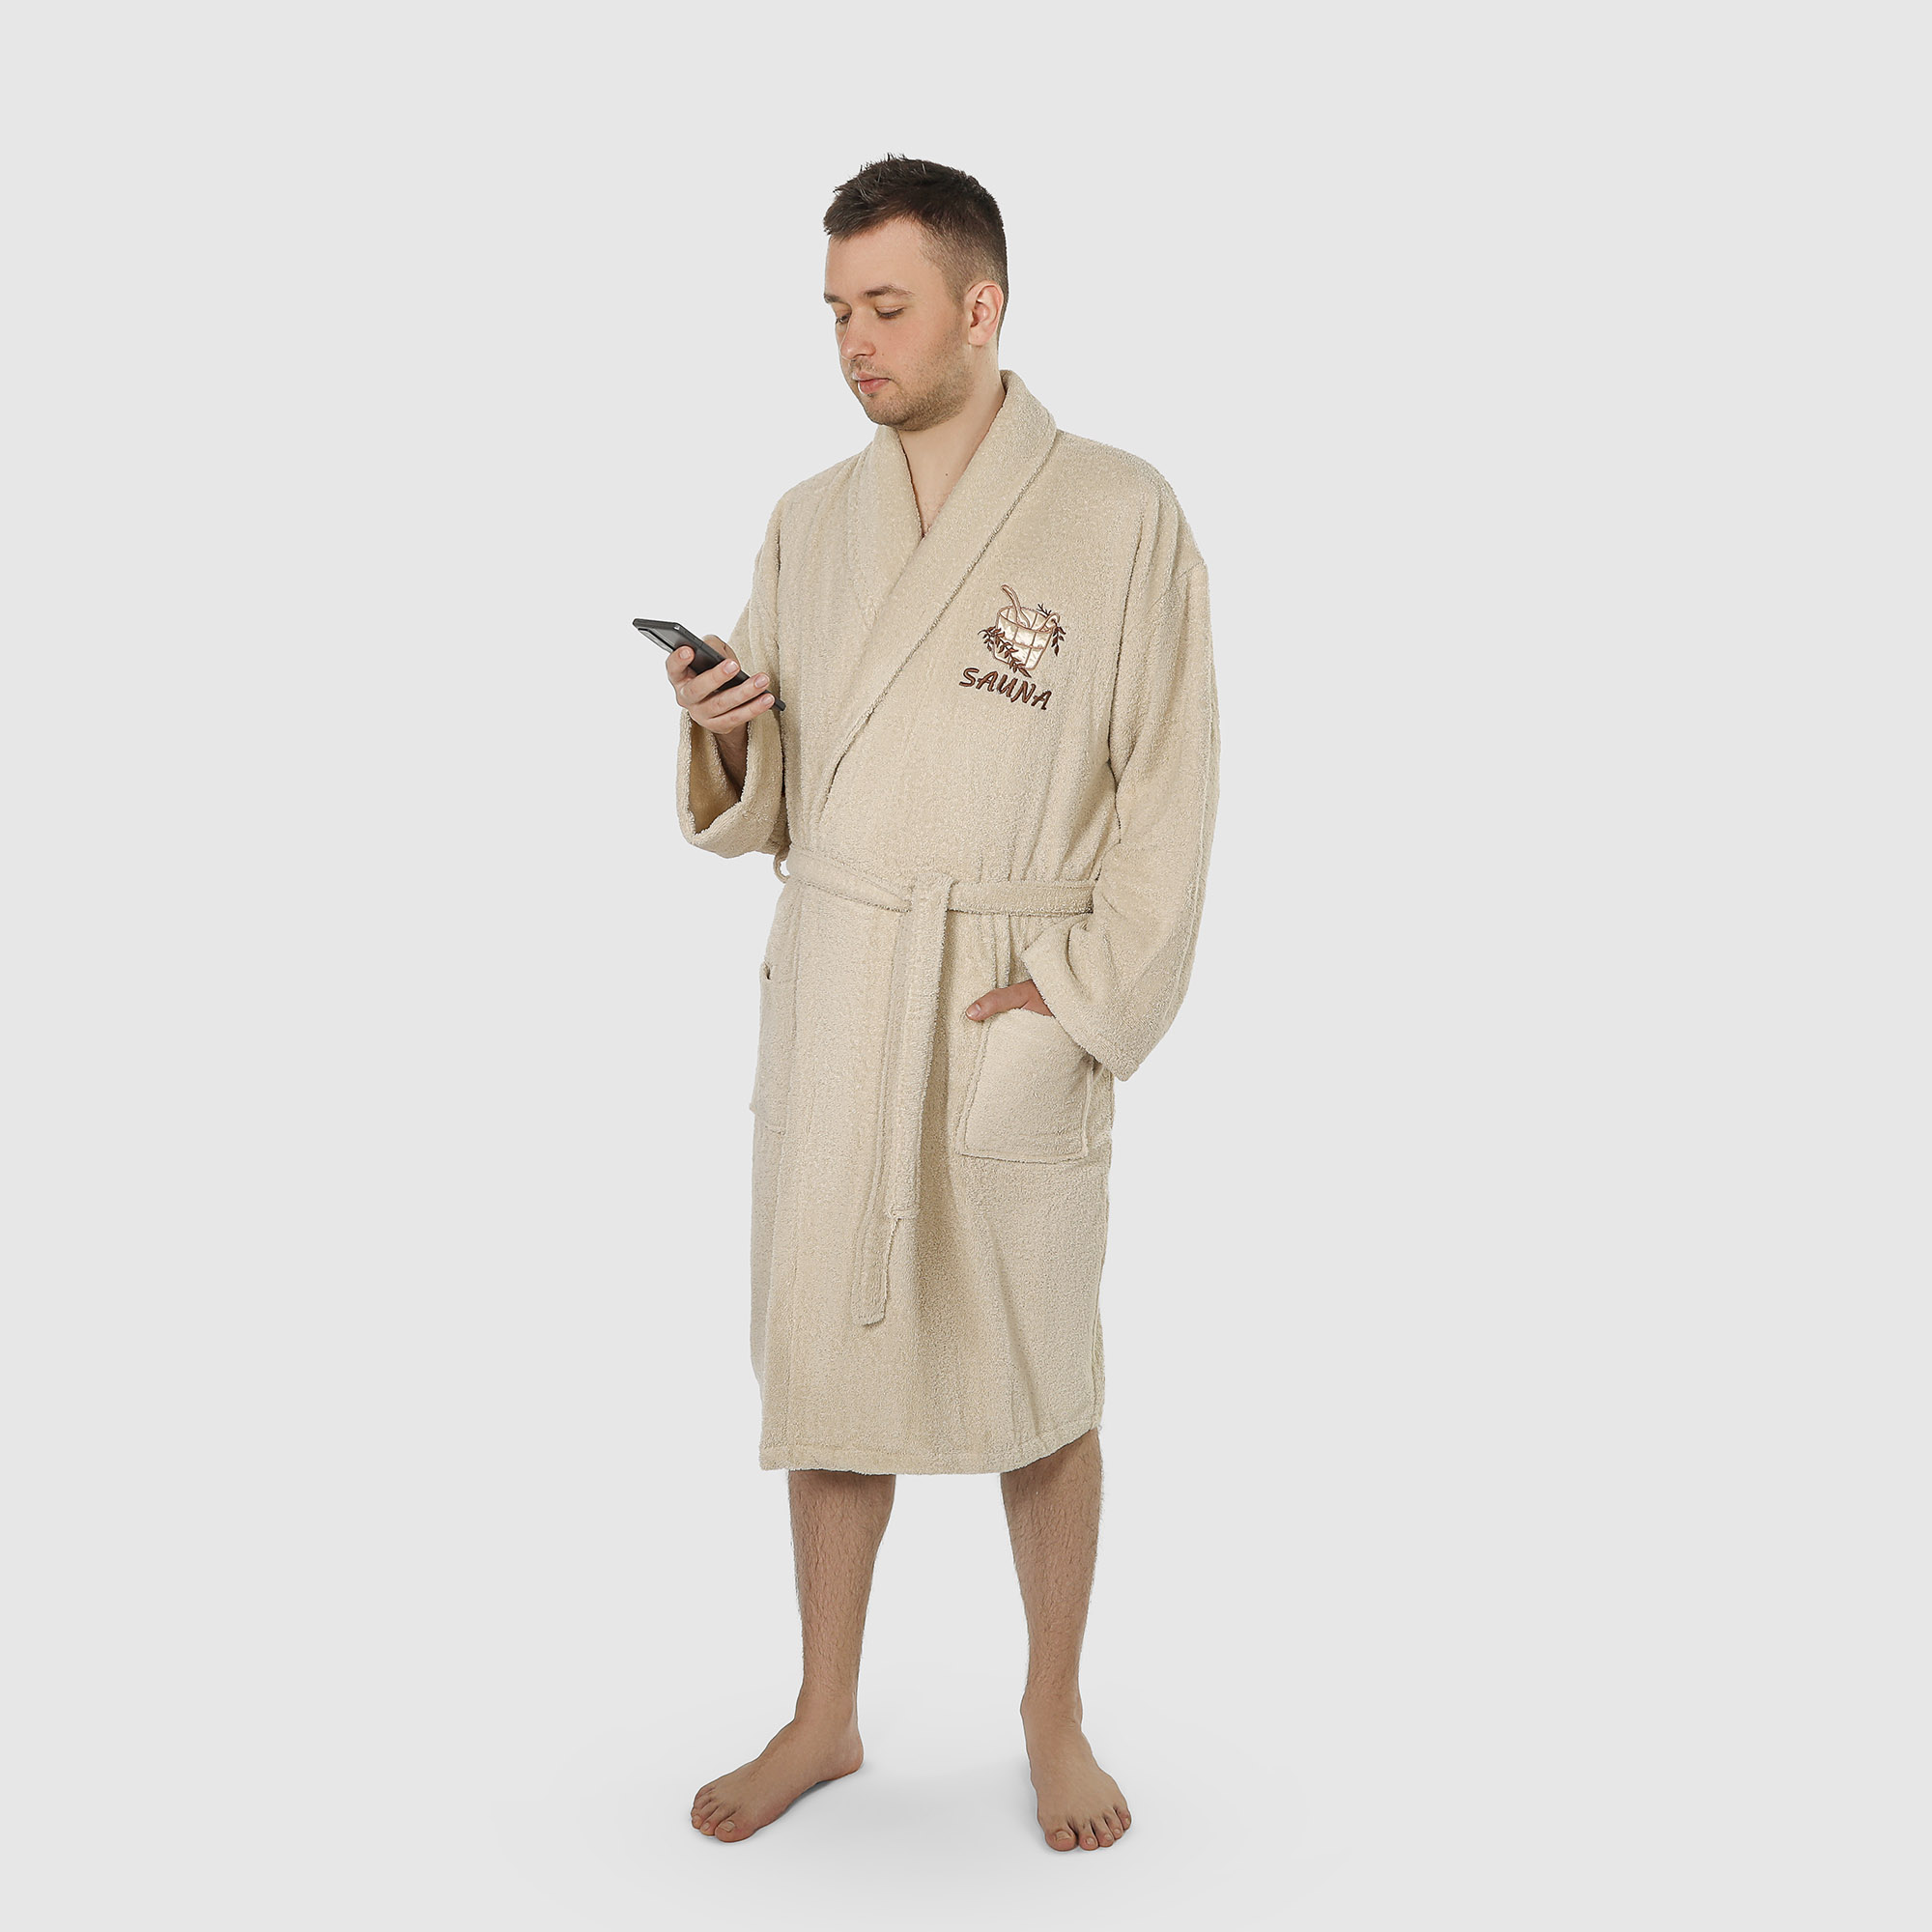 Халат мужской махровый с воротником Asil sauna brown m полотенце махровое asil sauna brown 70x140